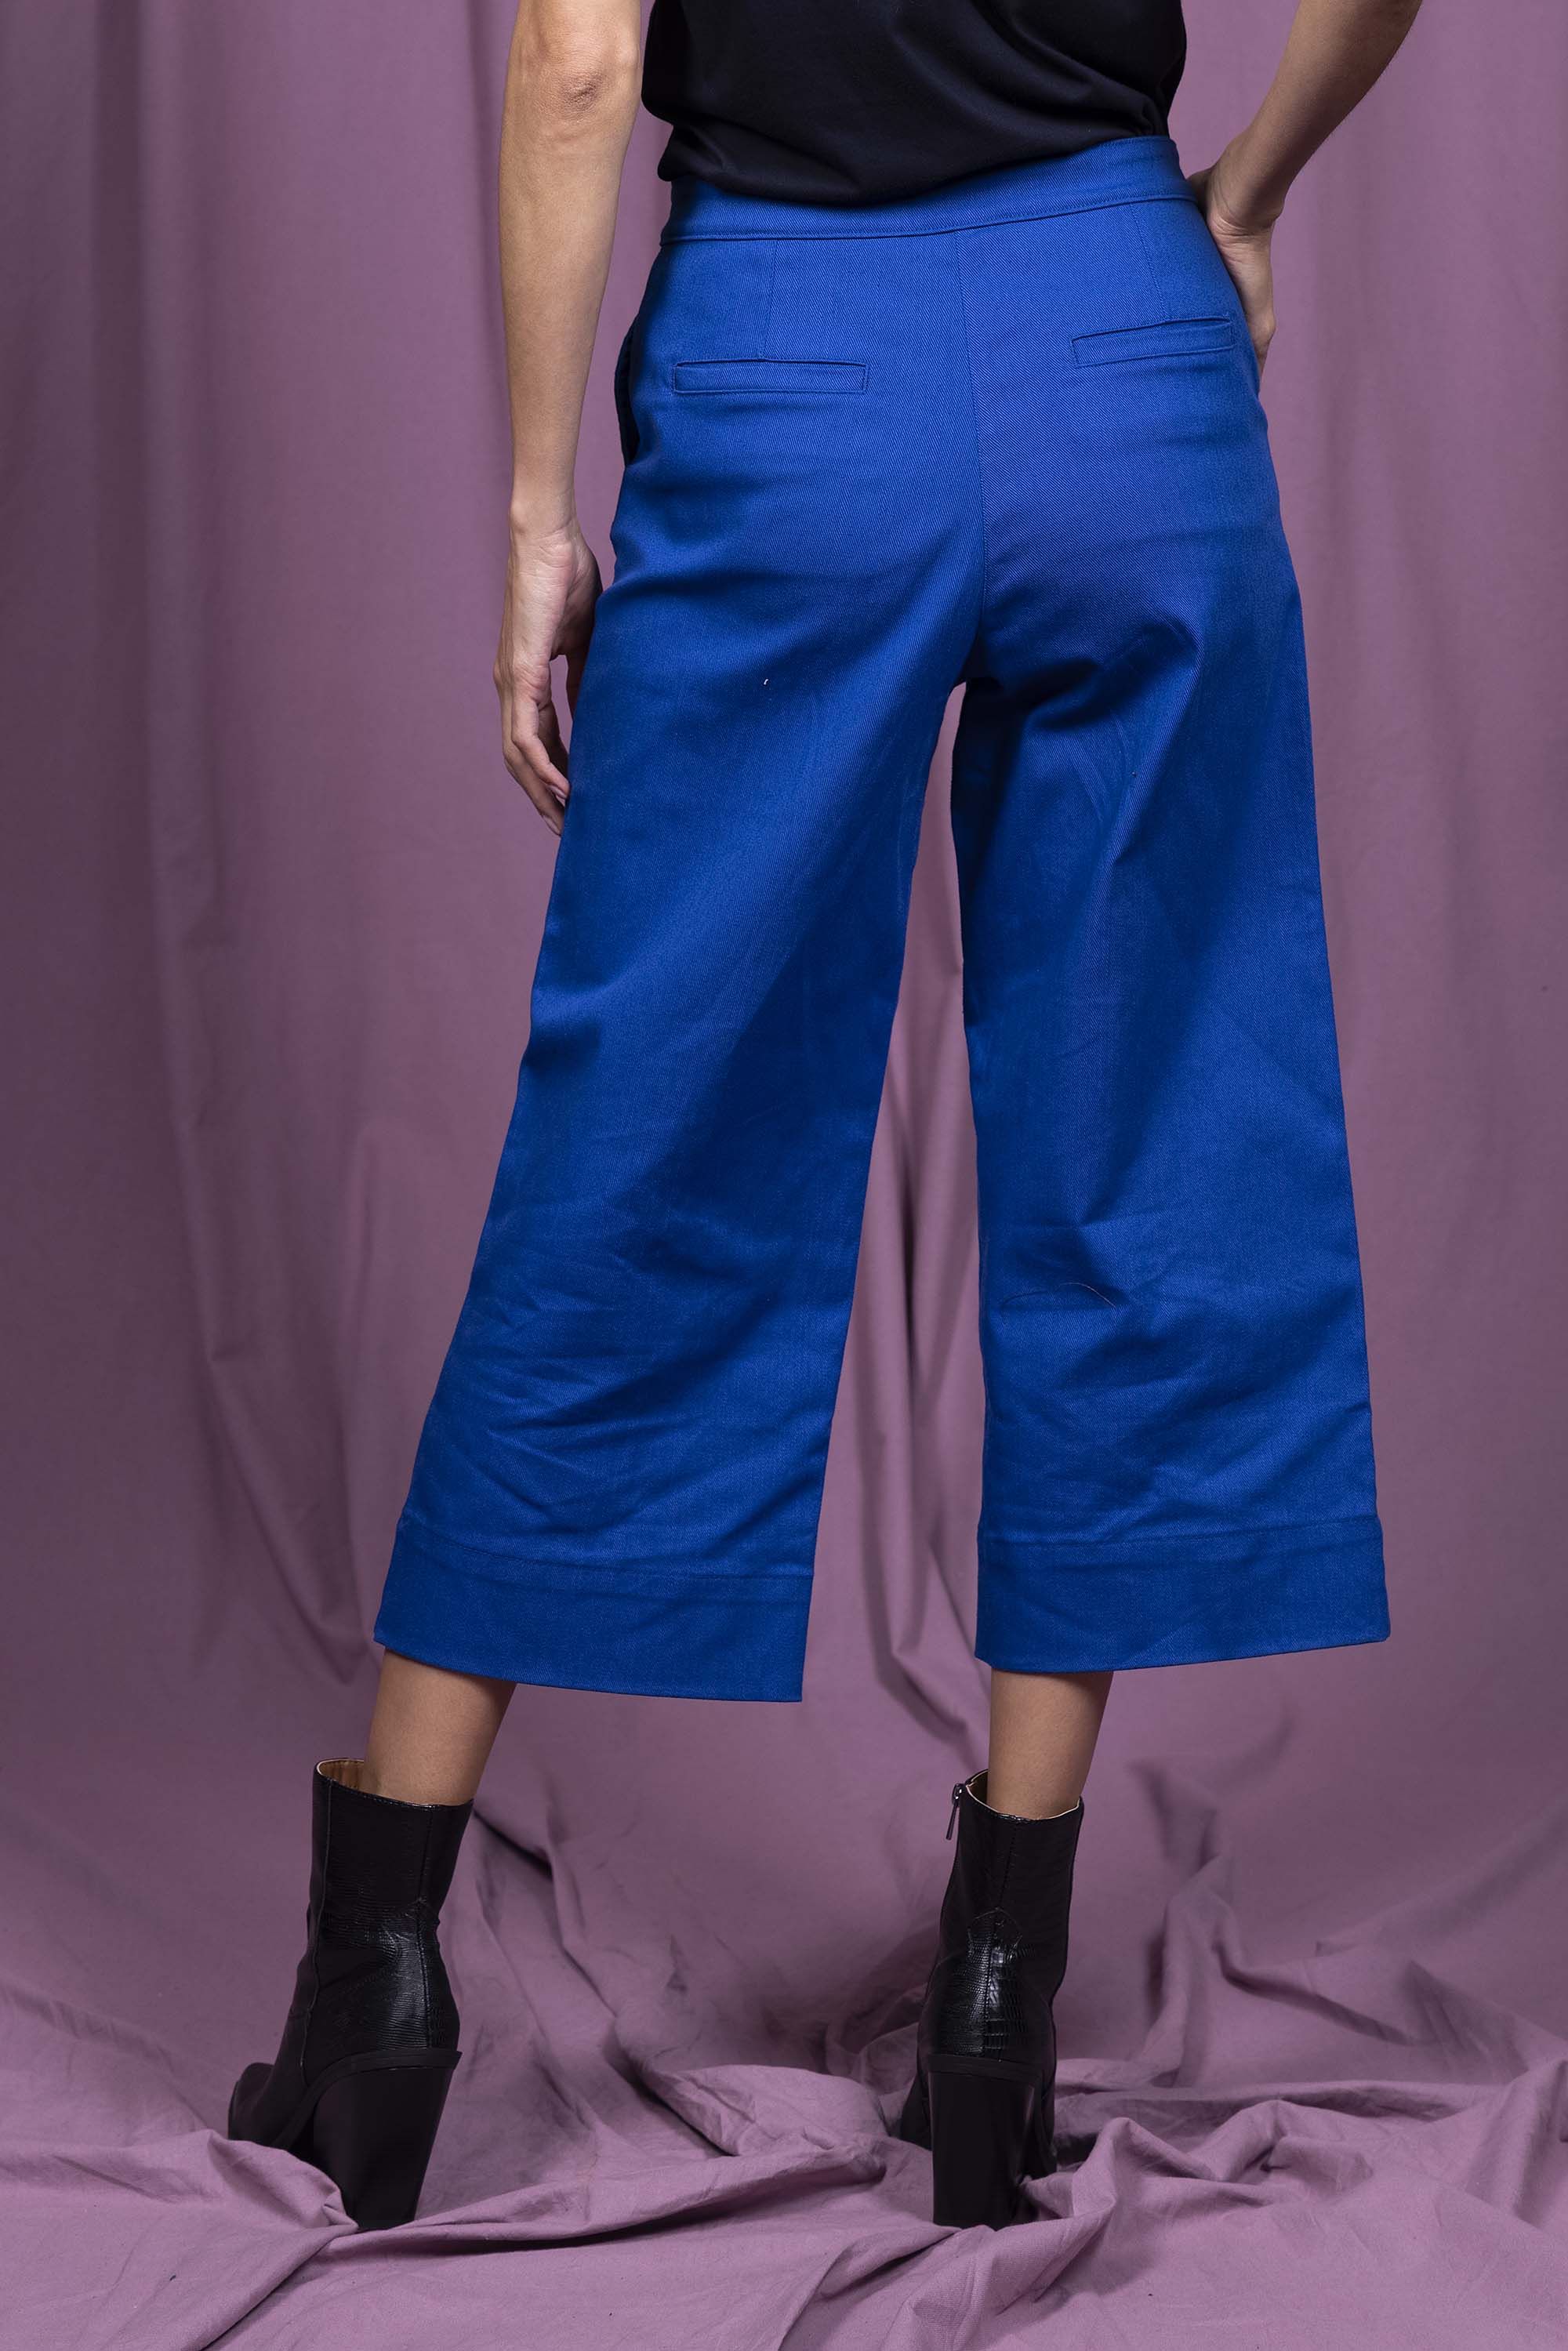 Pantalon Cristina Bleu parfaite alternative aux jeans, les pantalons en coton Misericordia sont uniques et confortables